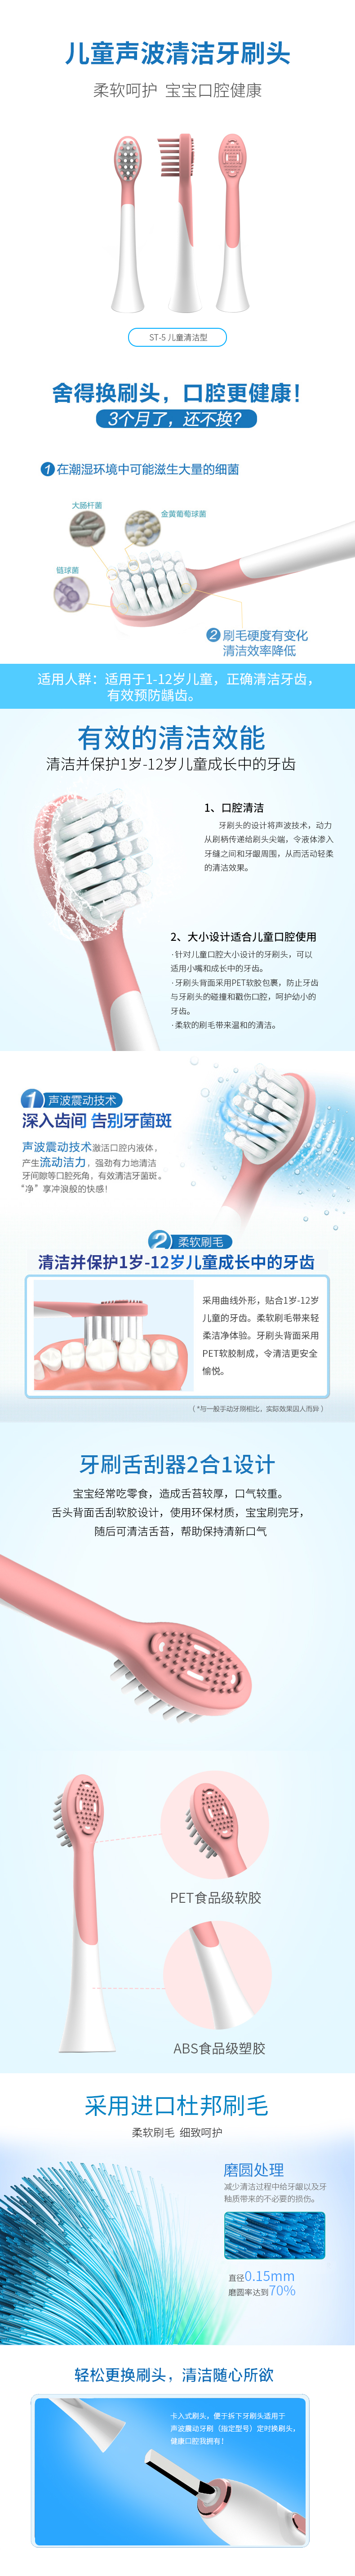 ST-5儿童清洁型牙刷头.jpg